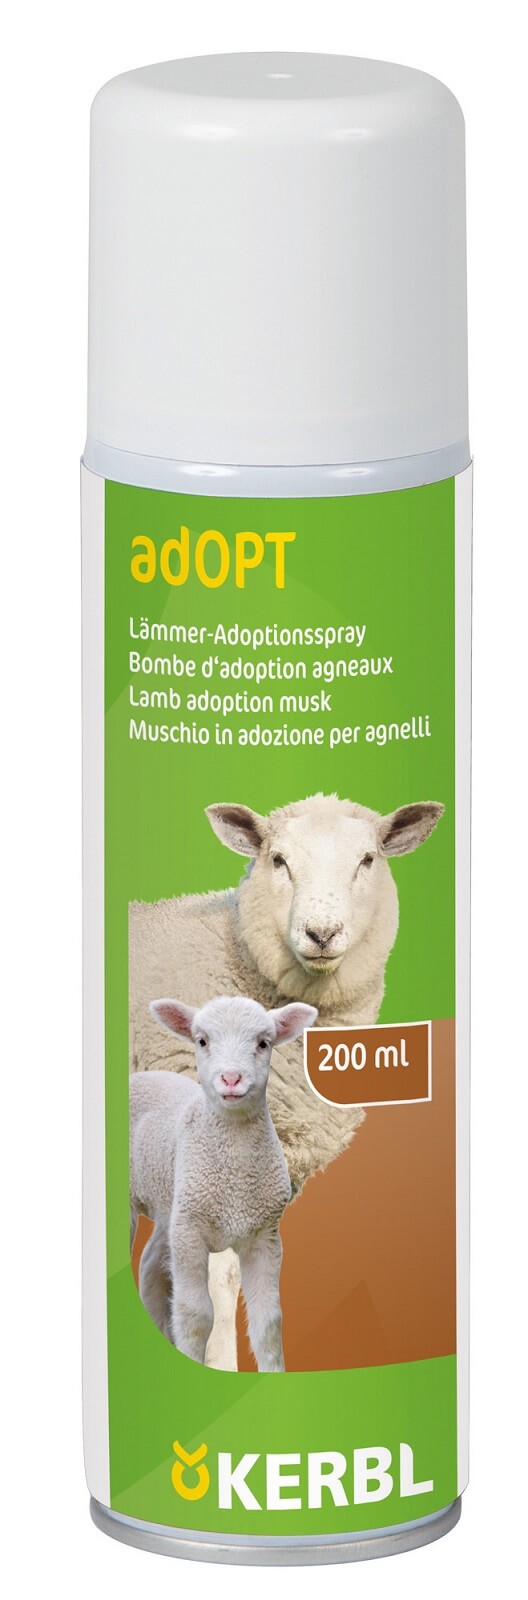 Lämmer-Adoptionsspray adOPT 200ml